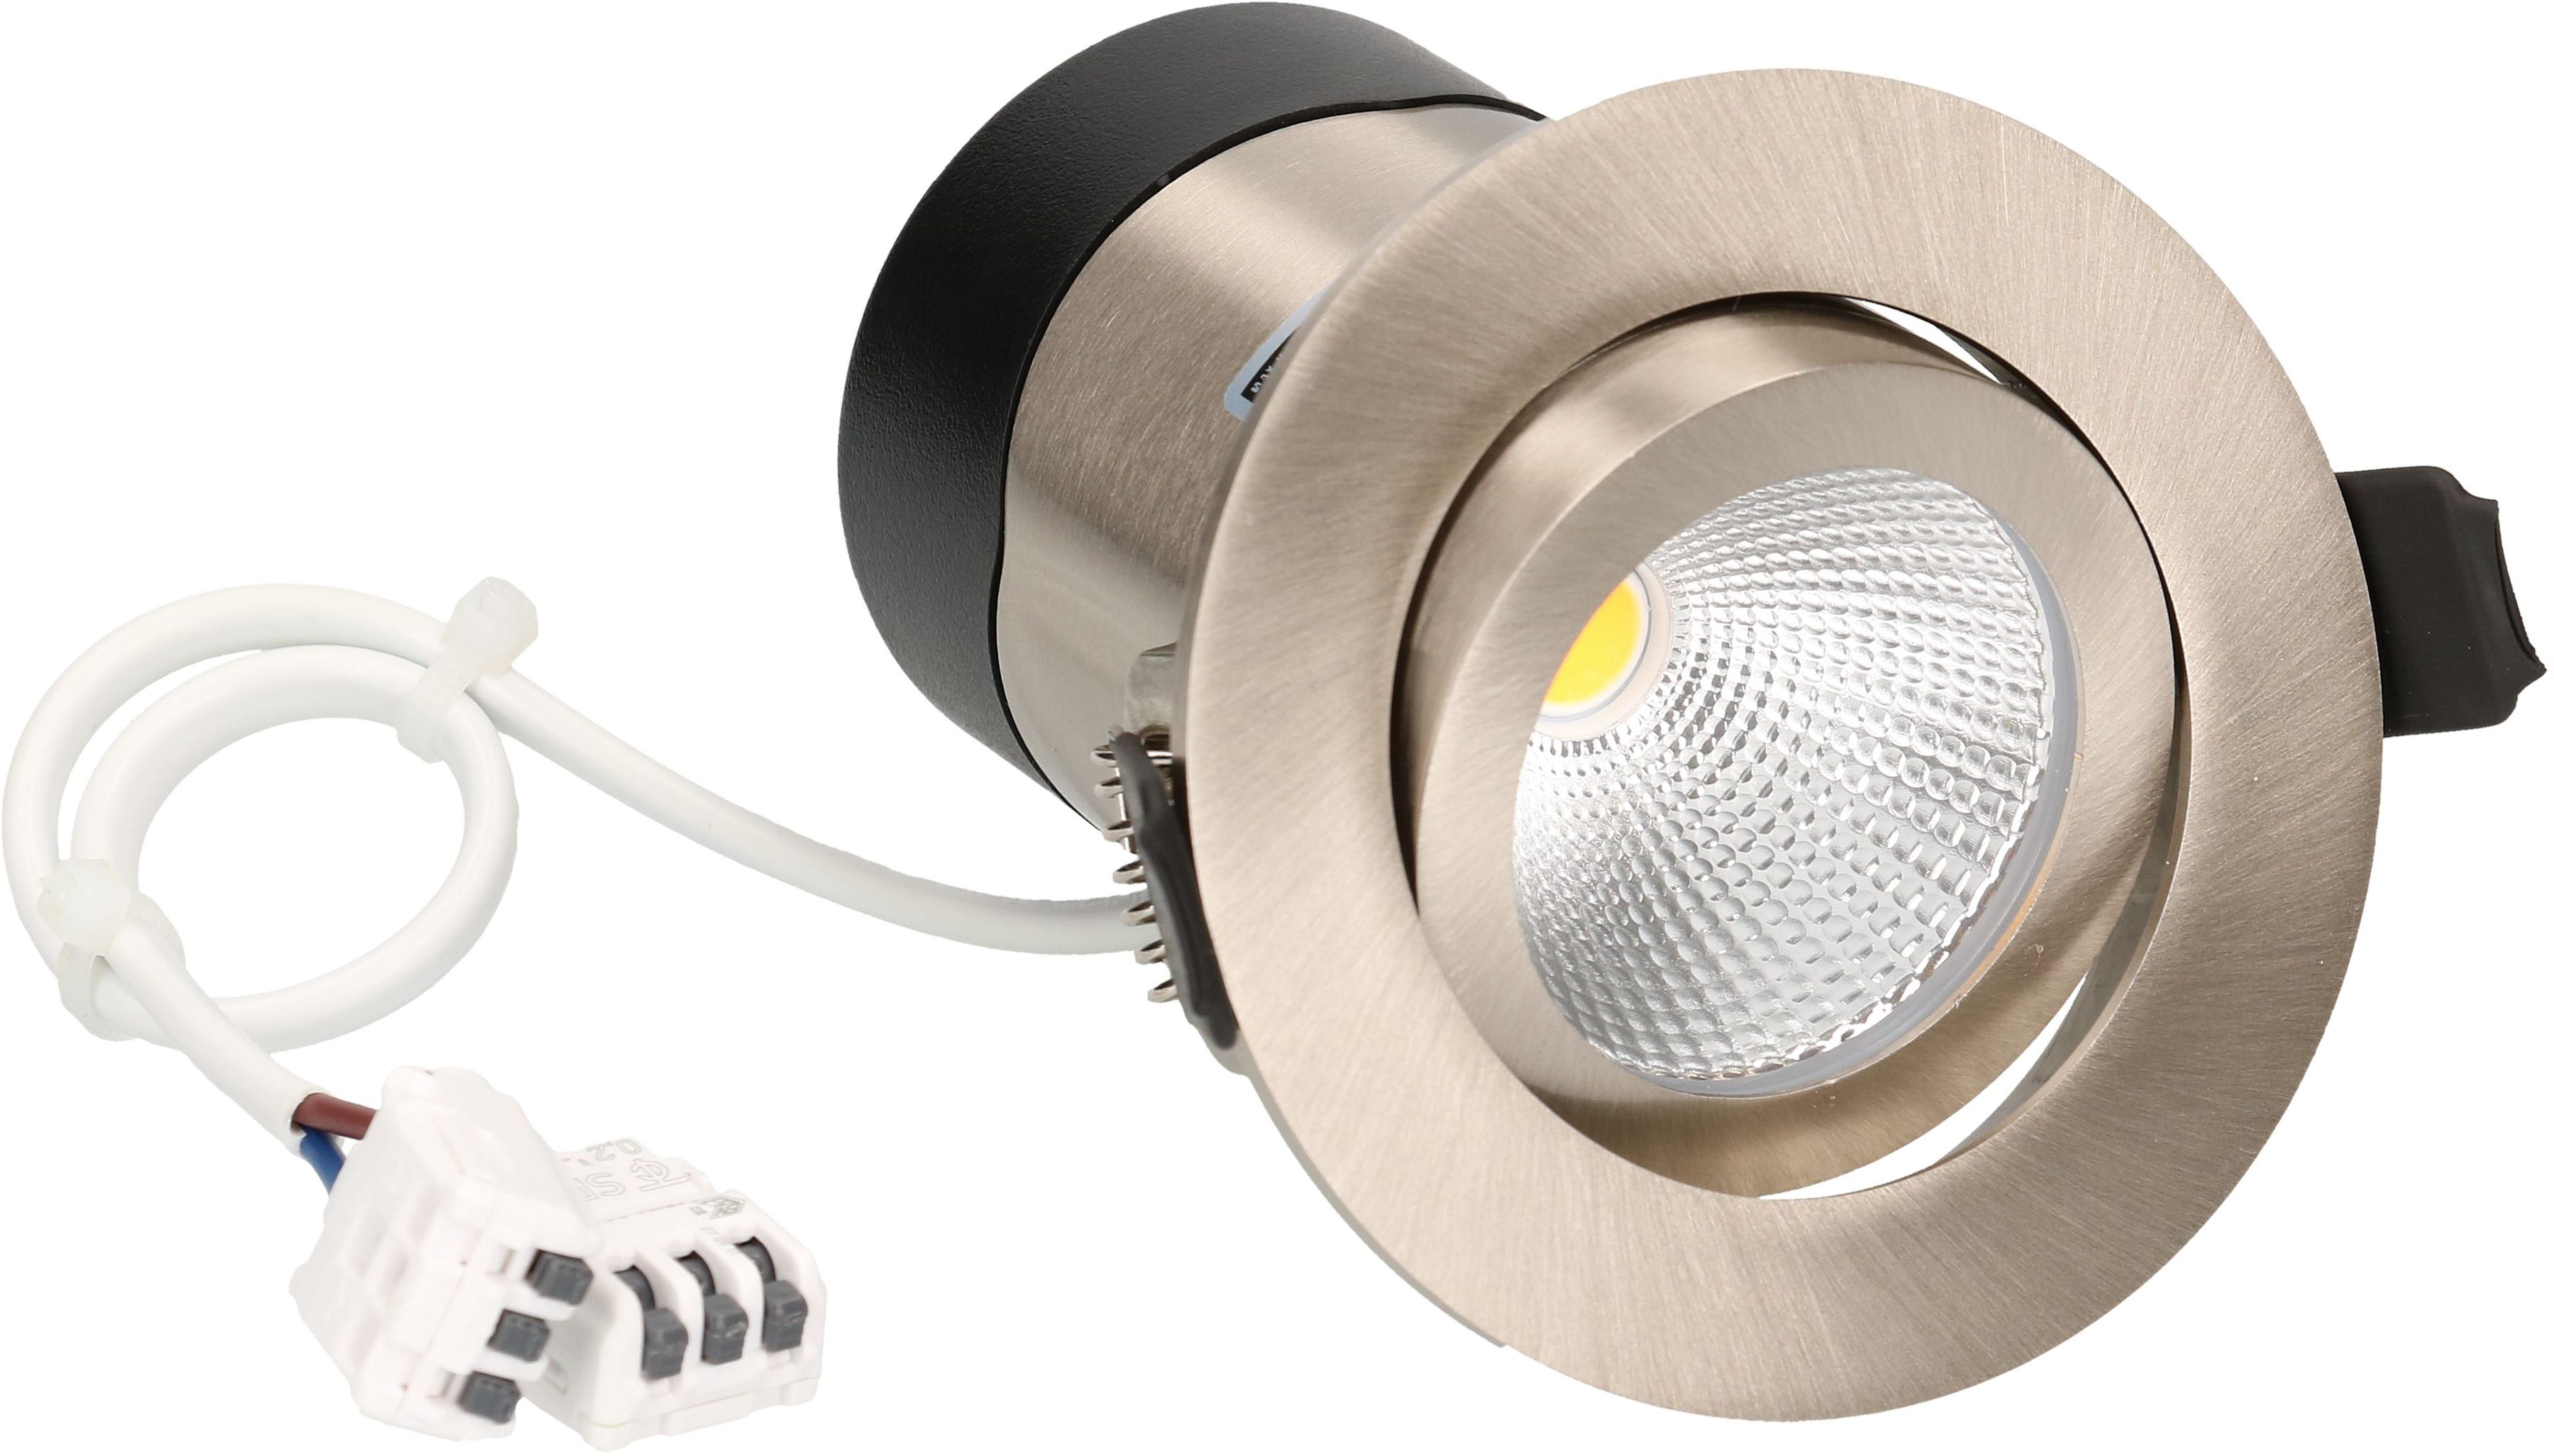 LED-Einbauspot DISC 230 Nickel gebürstet 3000K 570lm 36°